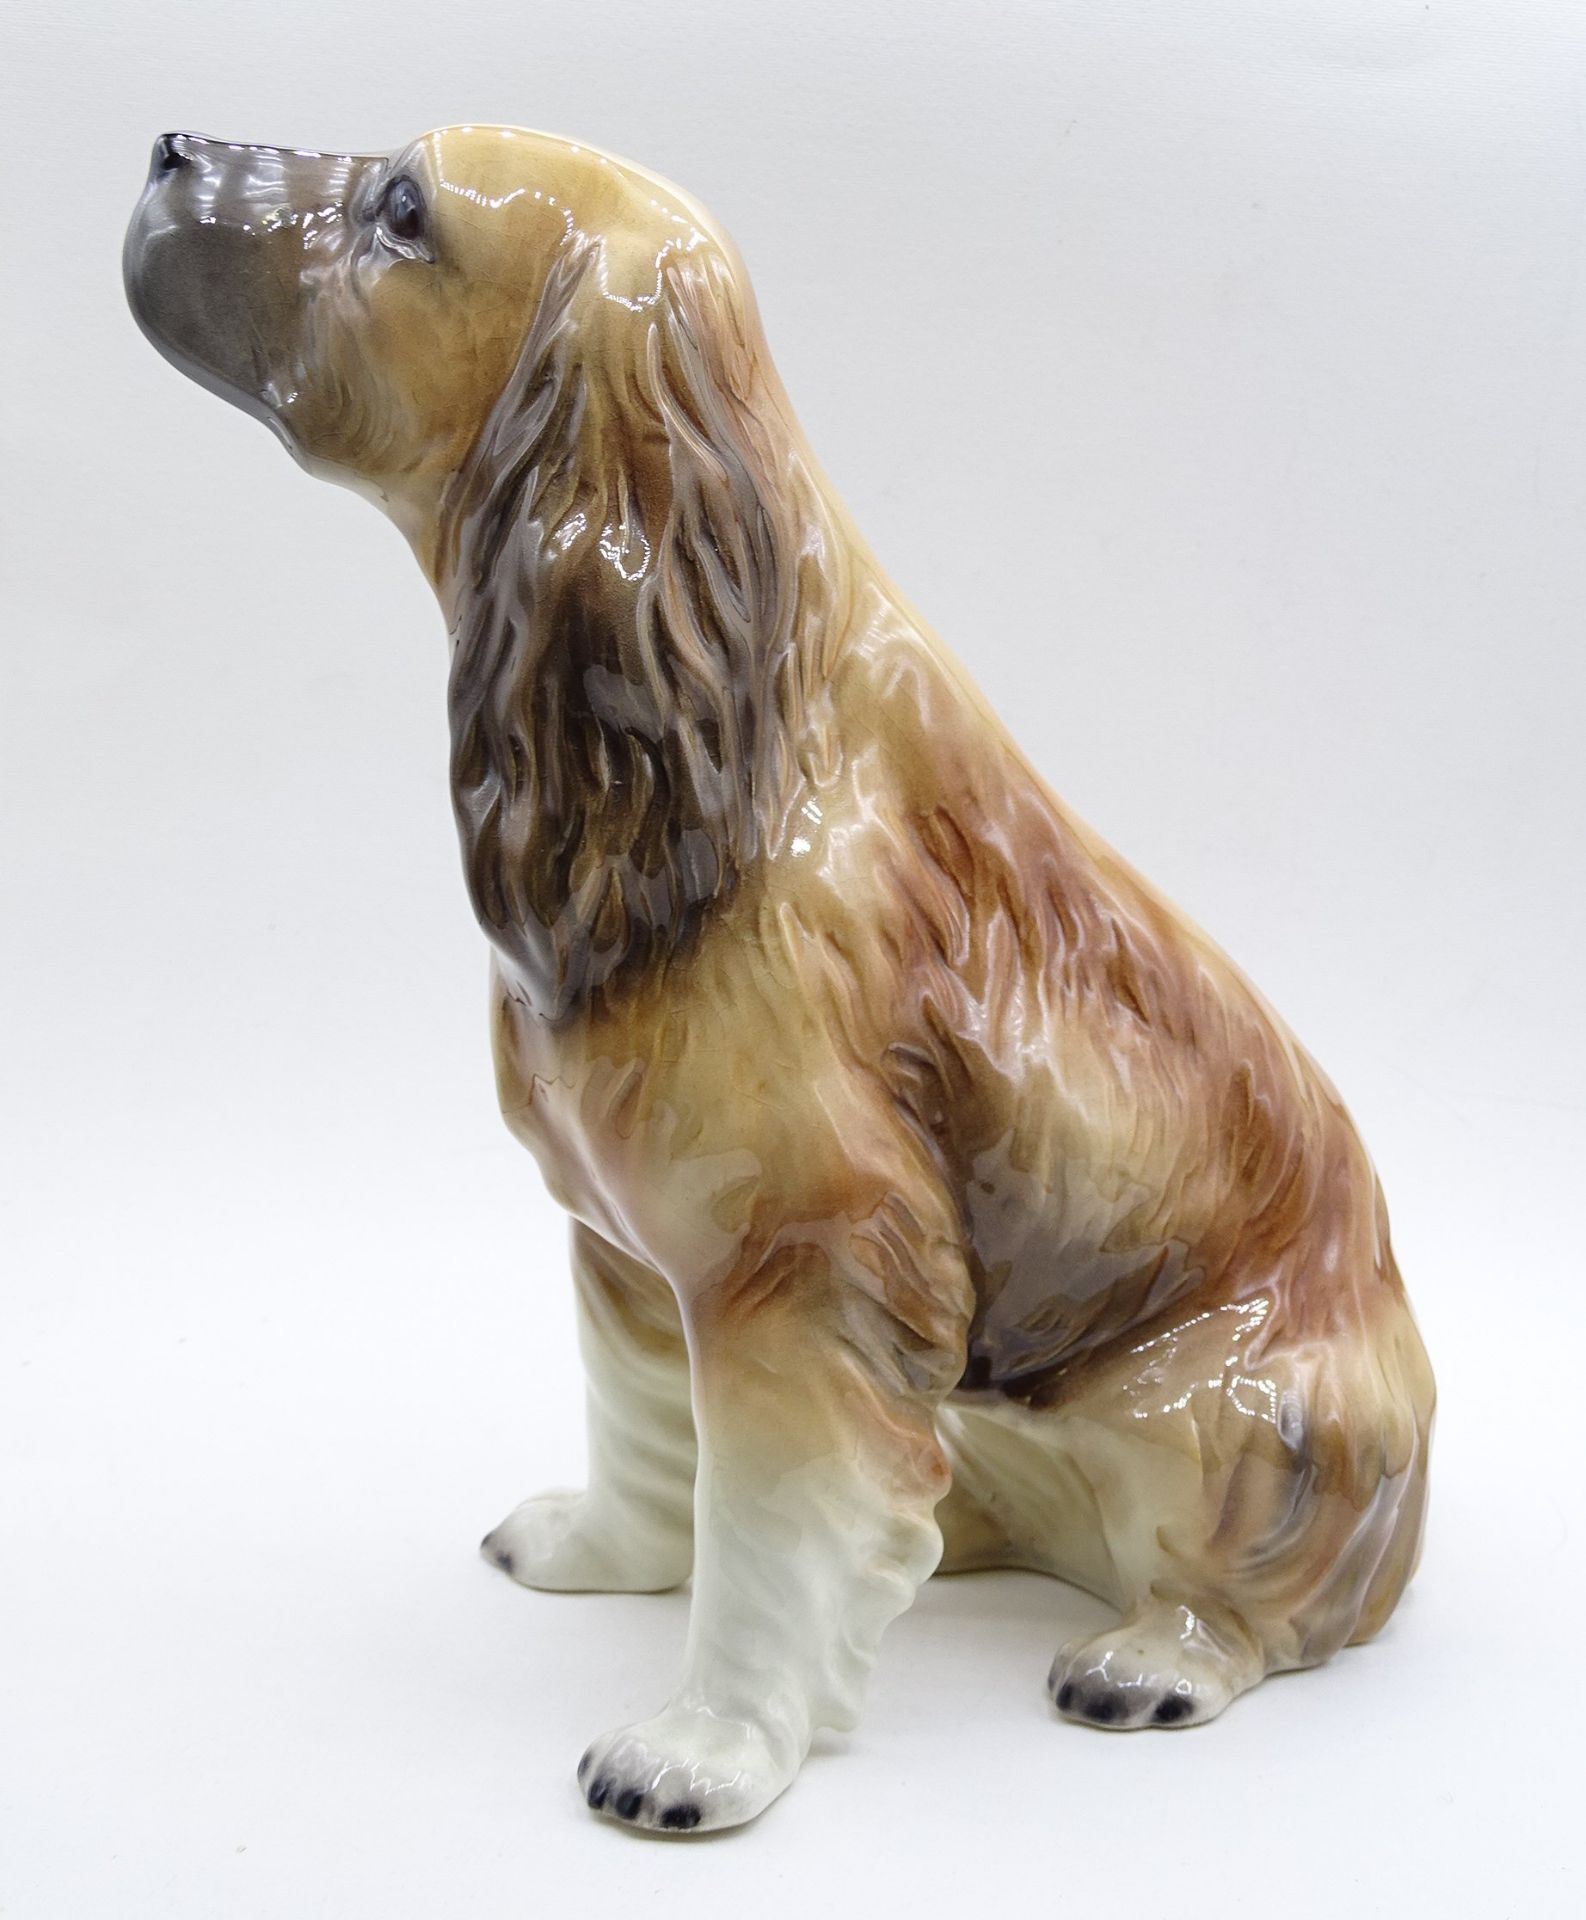 Hundefigur "Cocker Spaniel", nummeriert, "Made in Germany", mit Altersspuren, Glasurrisse - Bild 3 aus 7